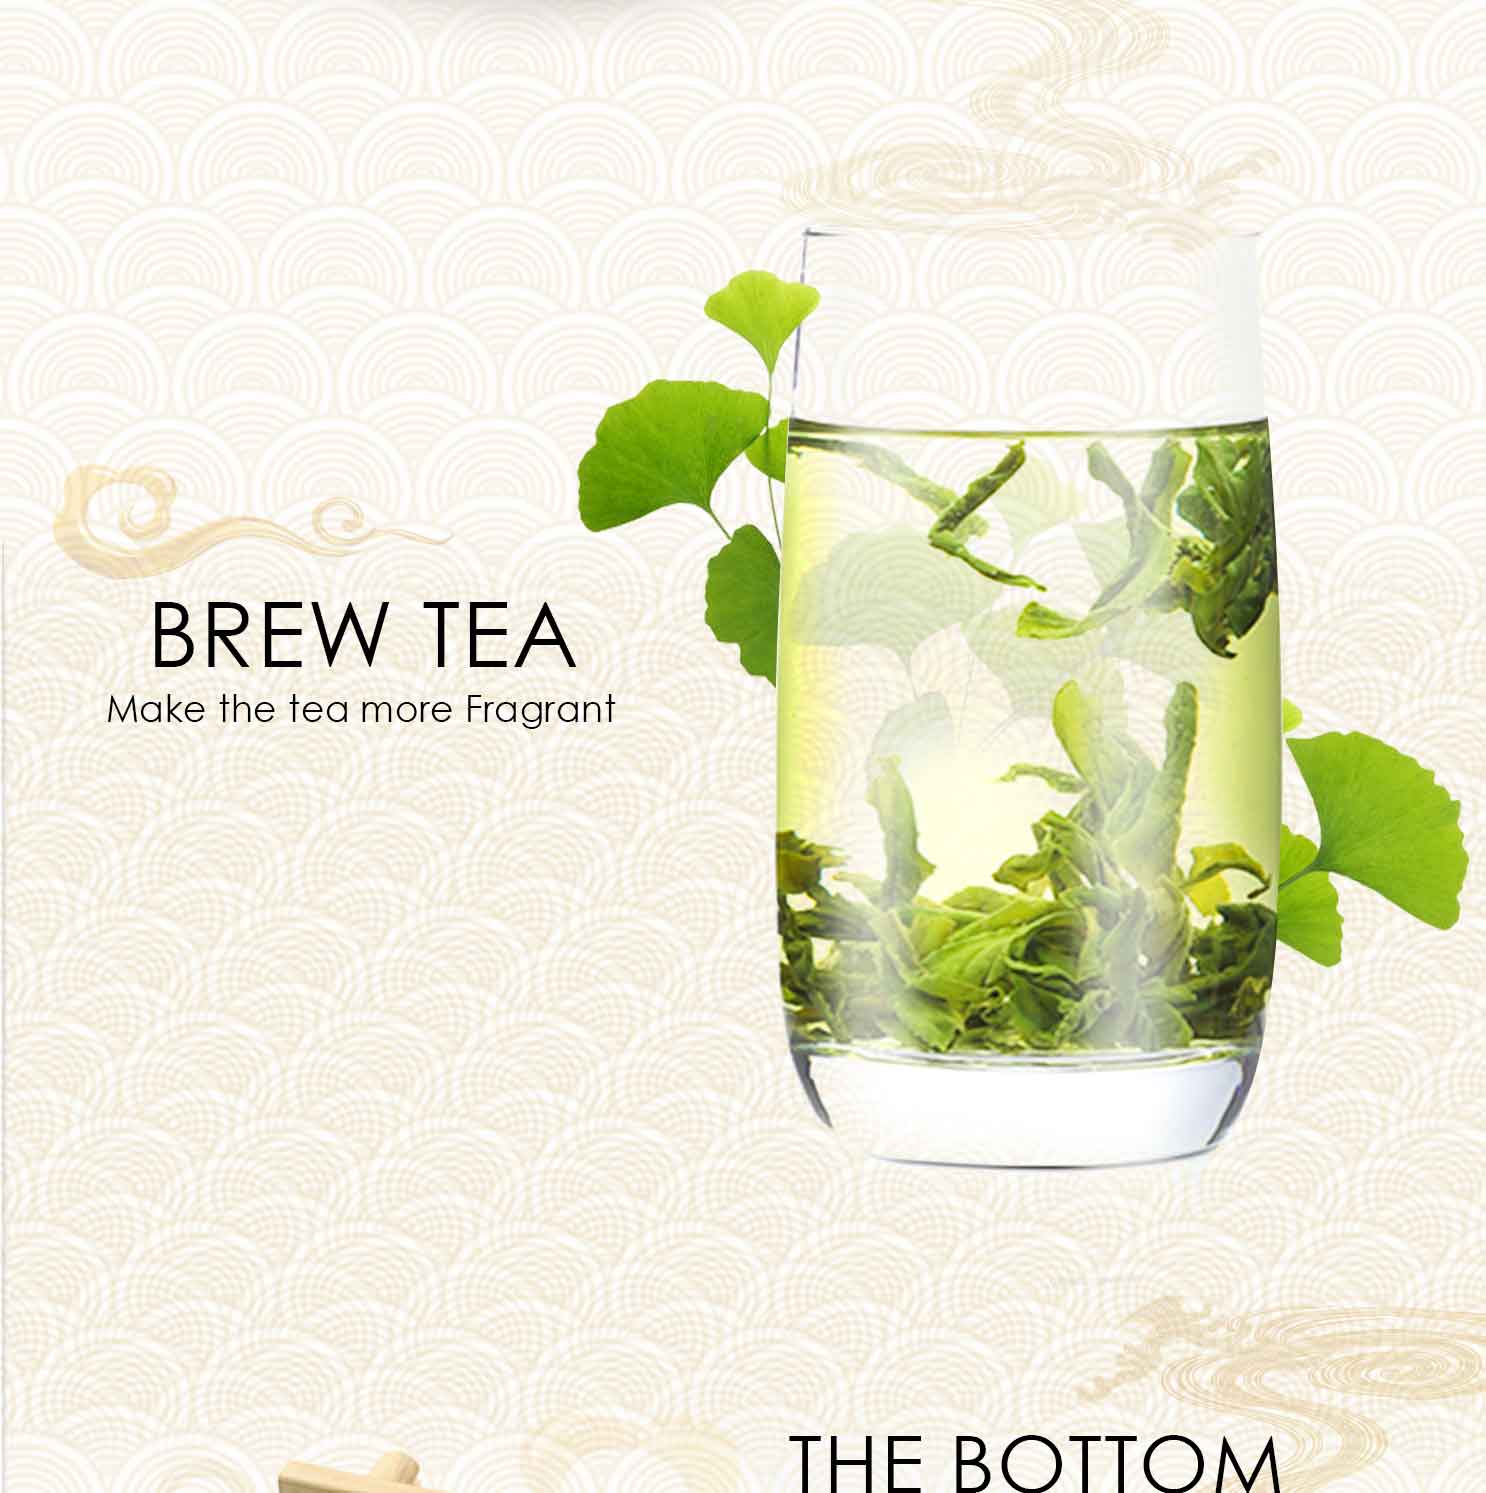 Liu An Gua Pian Tea